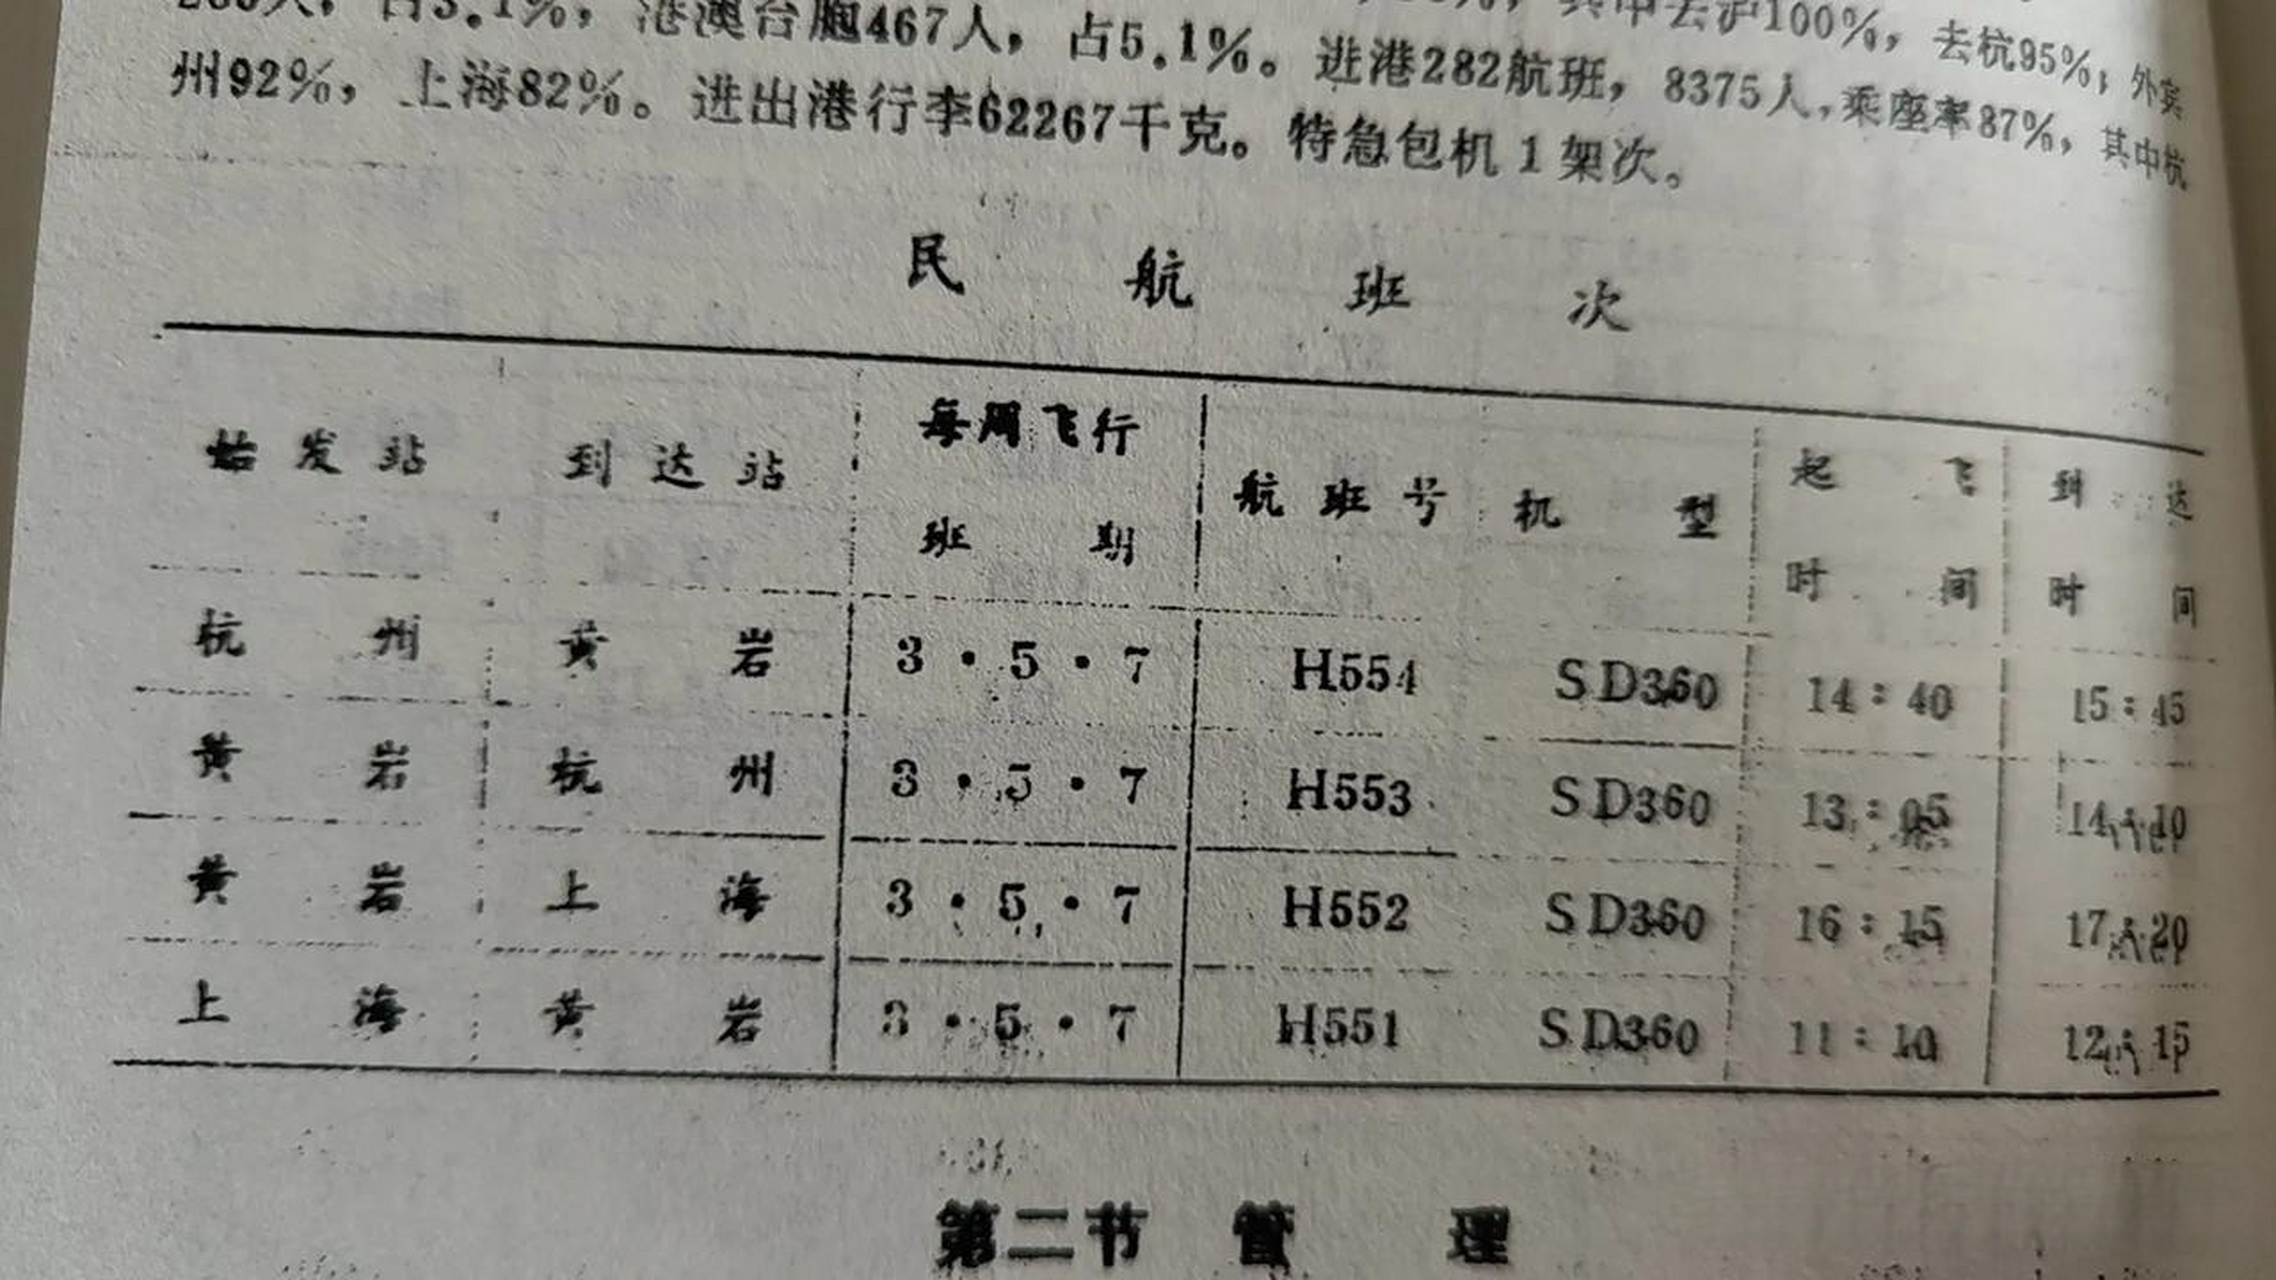 那时的黄岩机场只通航杭州和上海两个城市,如今这两个航班老早取消了